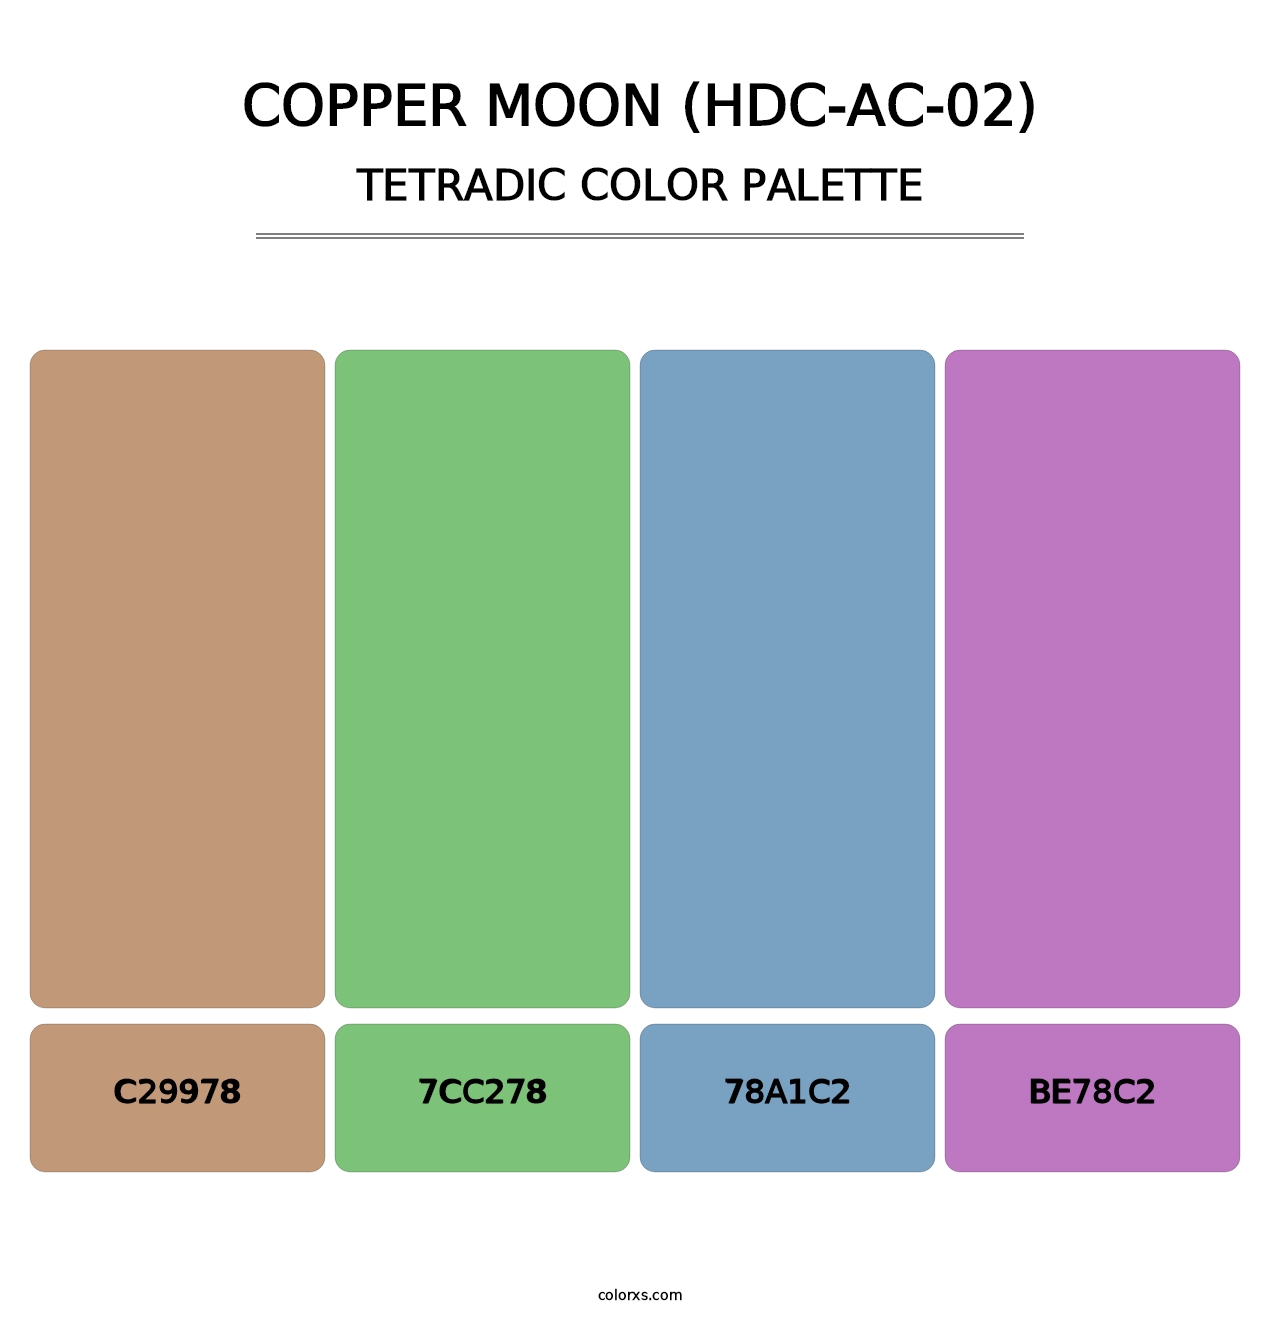 Copper Moon (HDC-AC-02) - Tetradic Color Palette